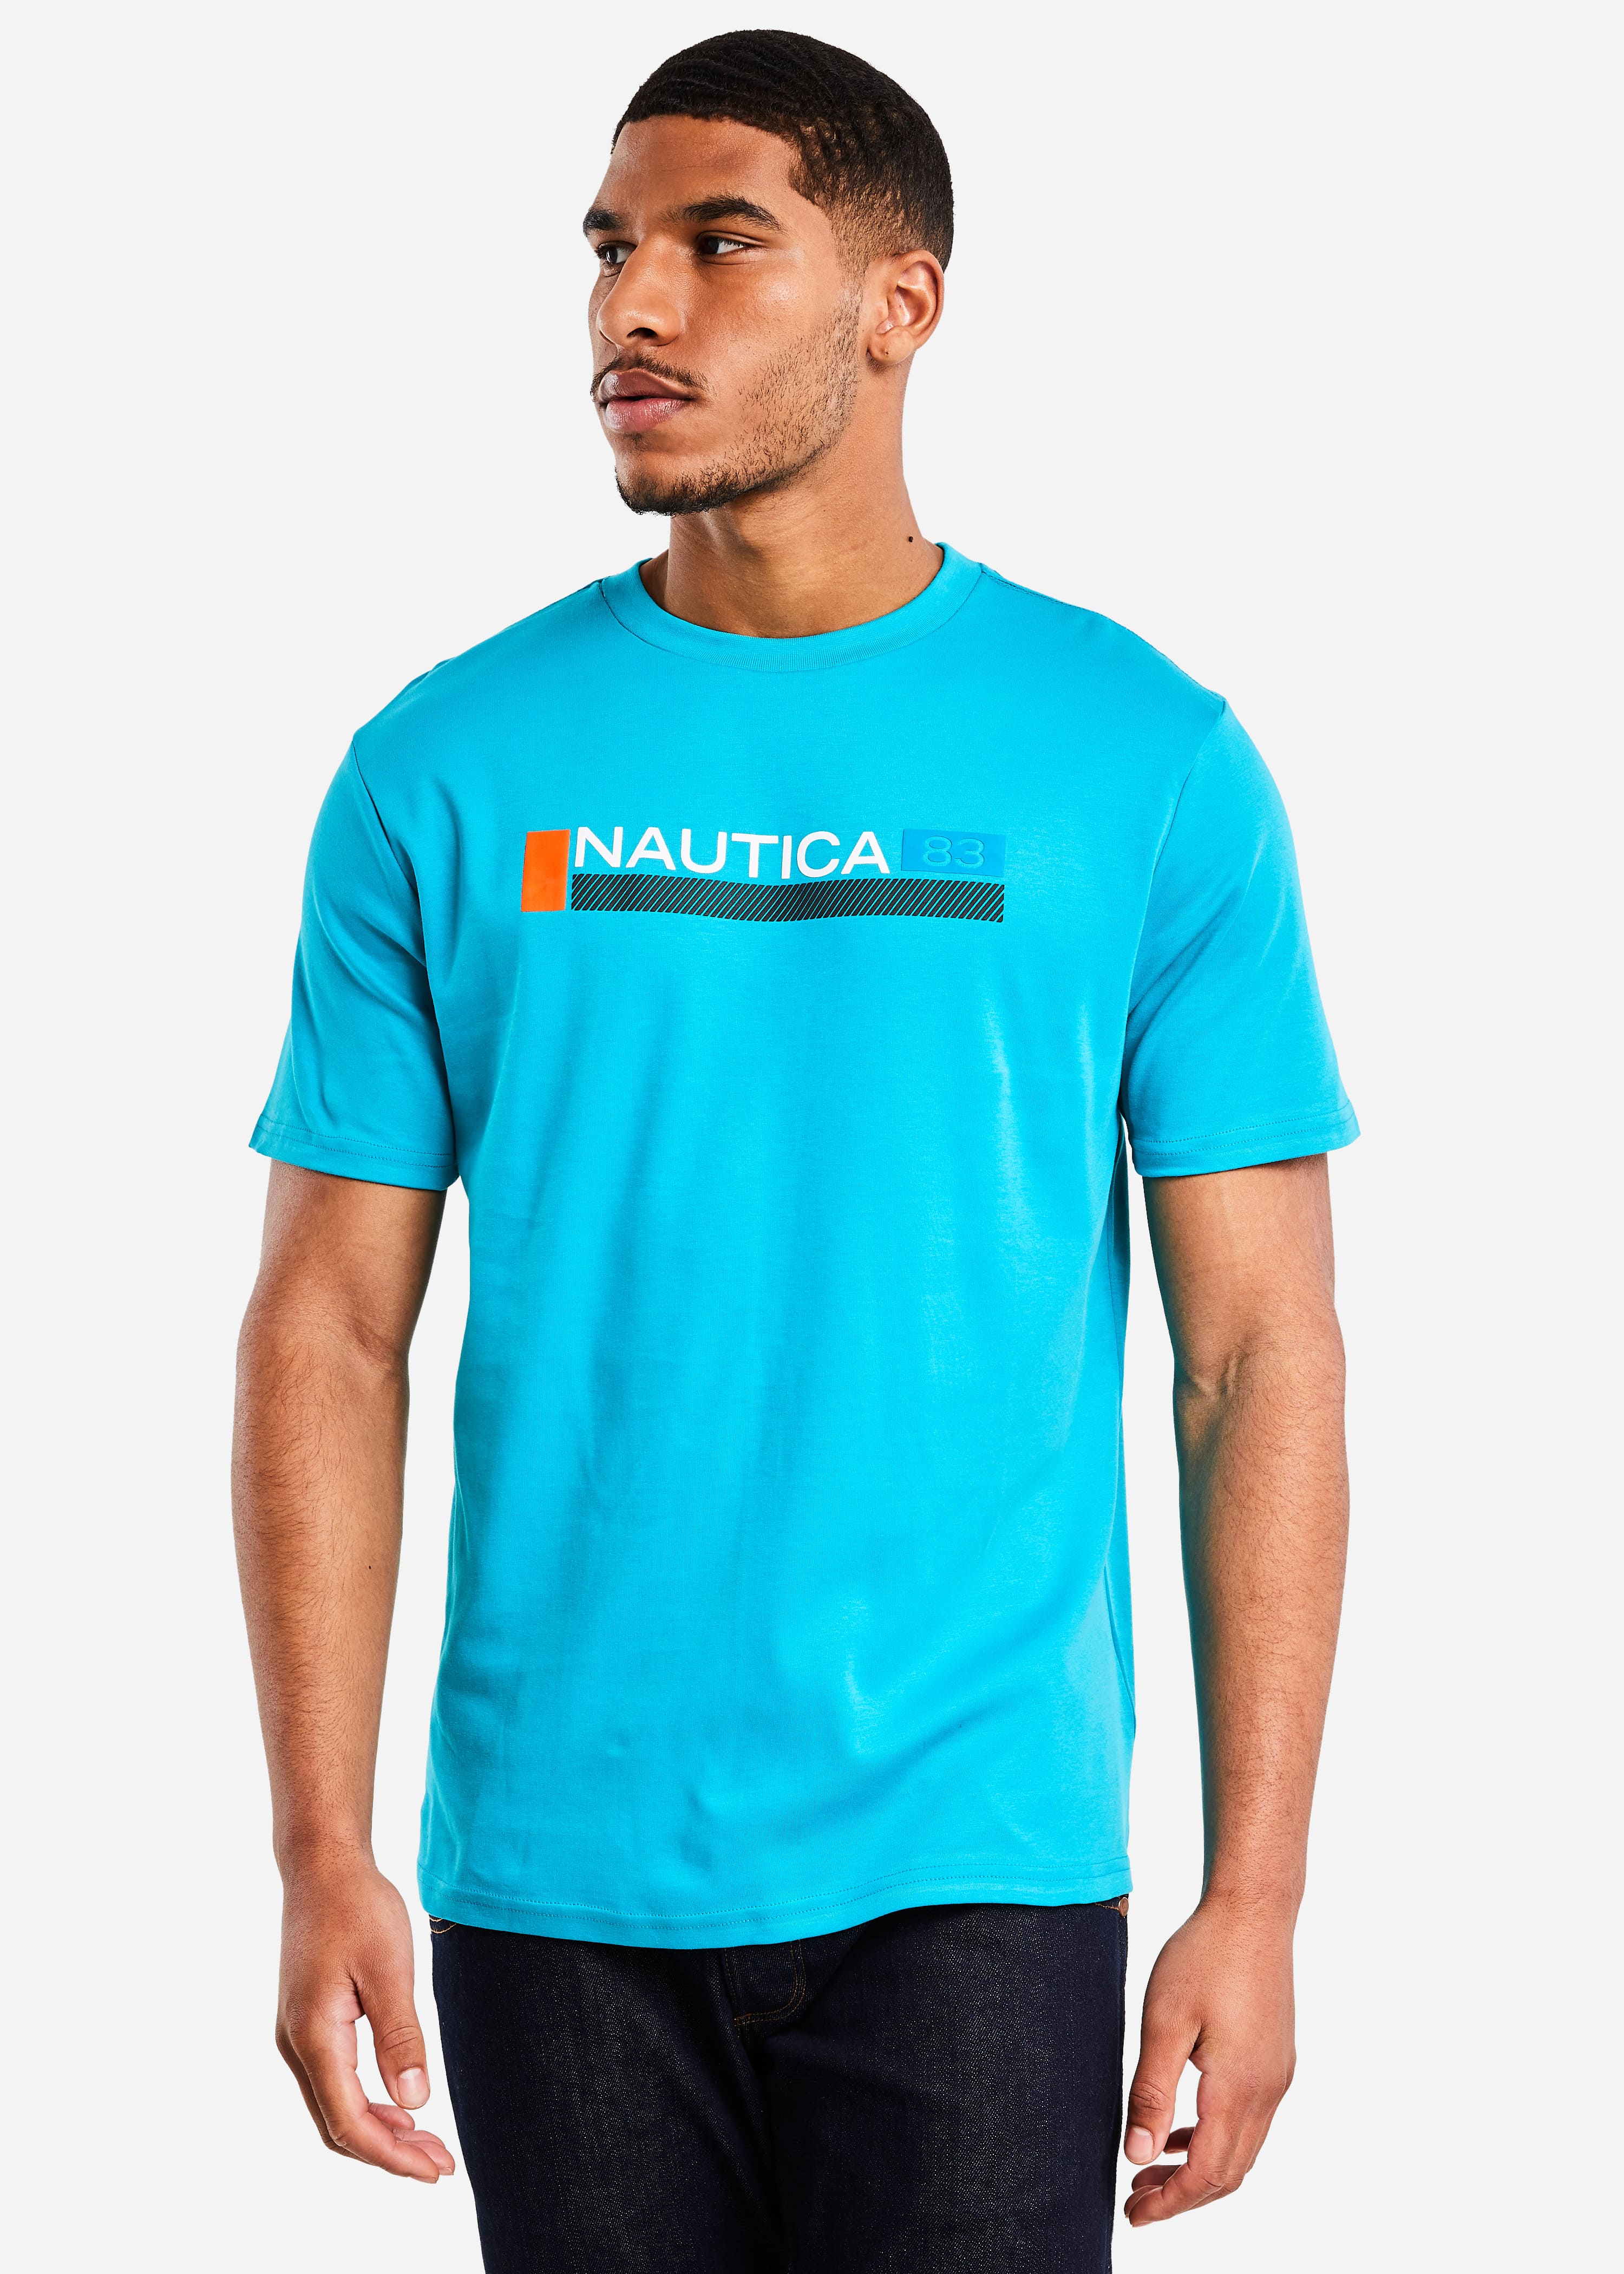 Veracruz T-Shirt - Turquoise